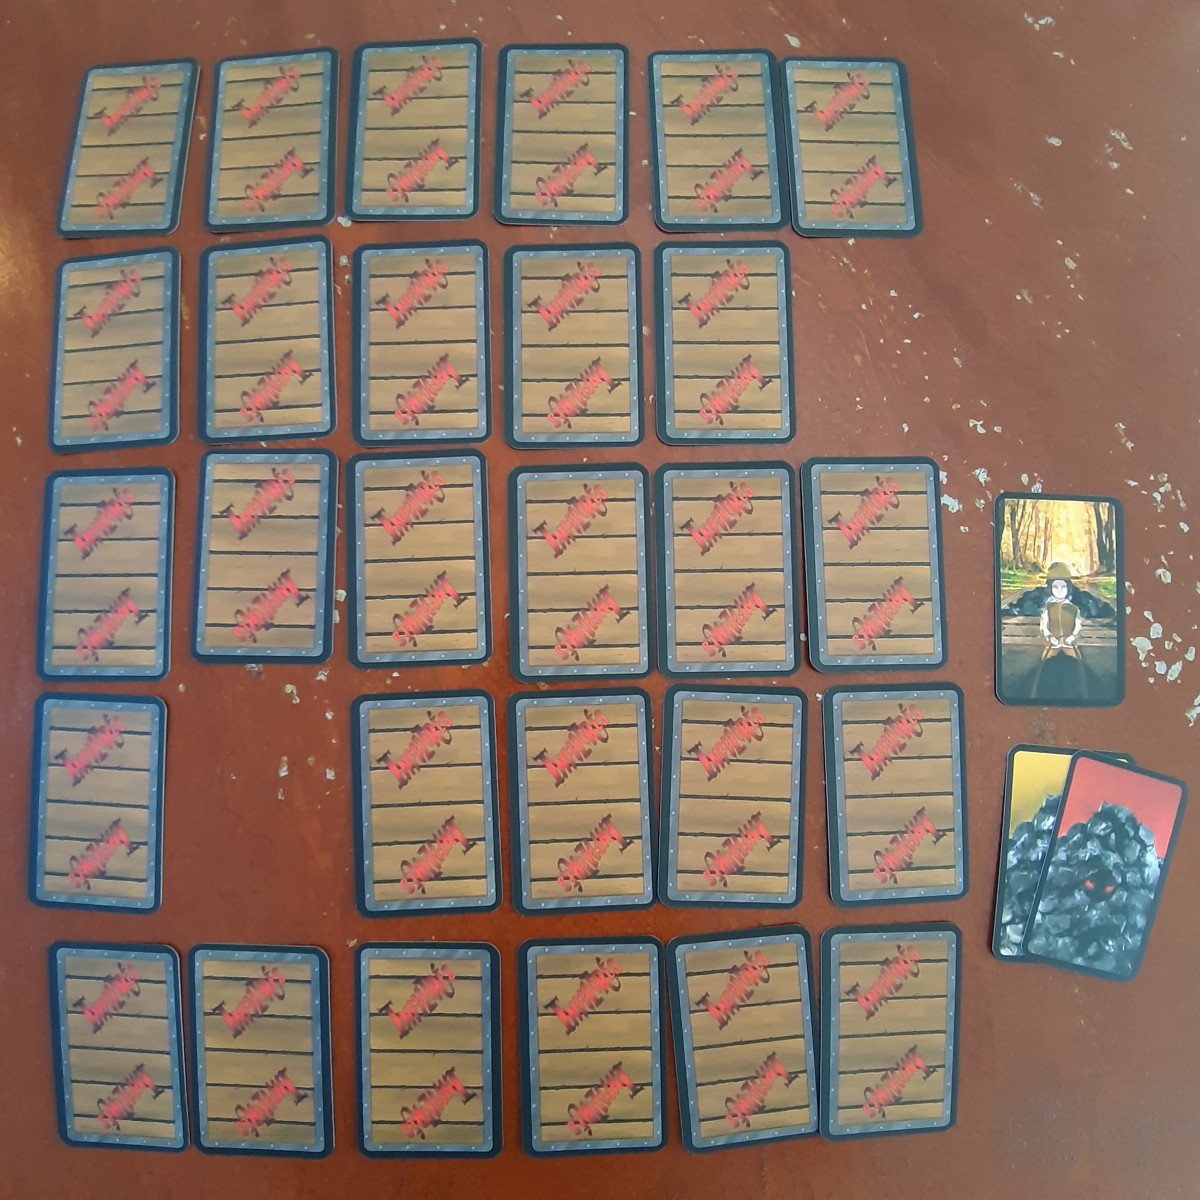 30 cartes Infiltrés face cachée 1 carte Rôle et 2 cartes sorties du jeu